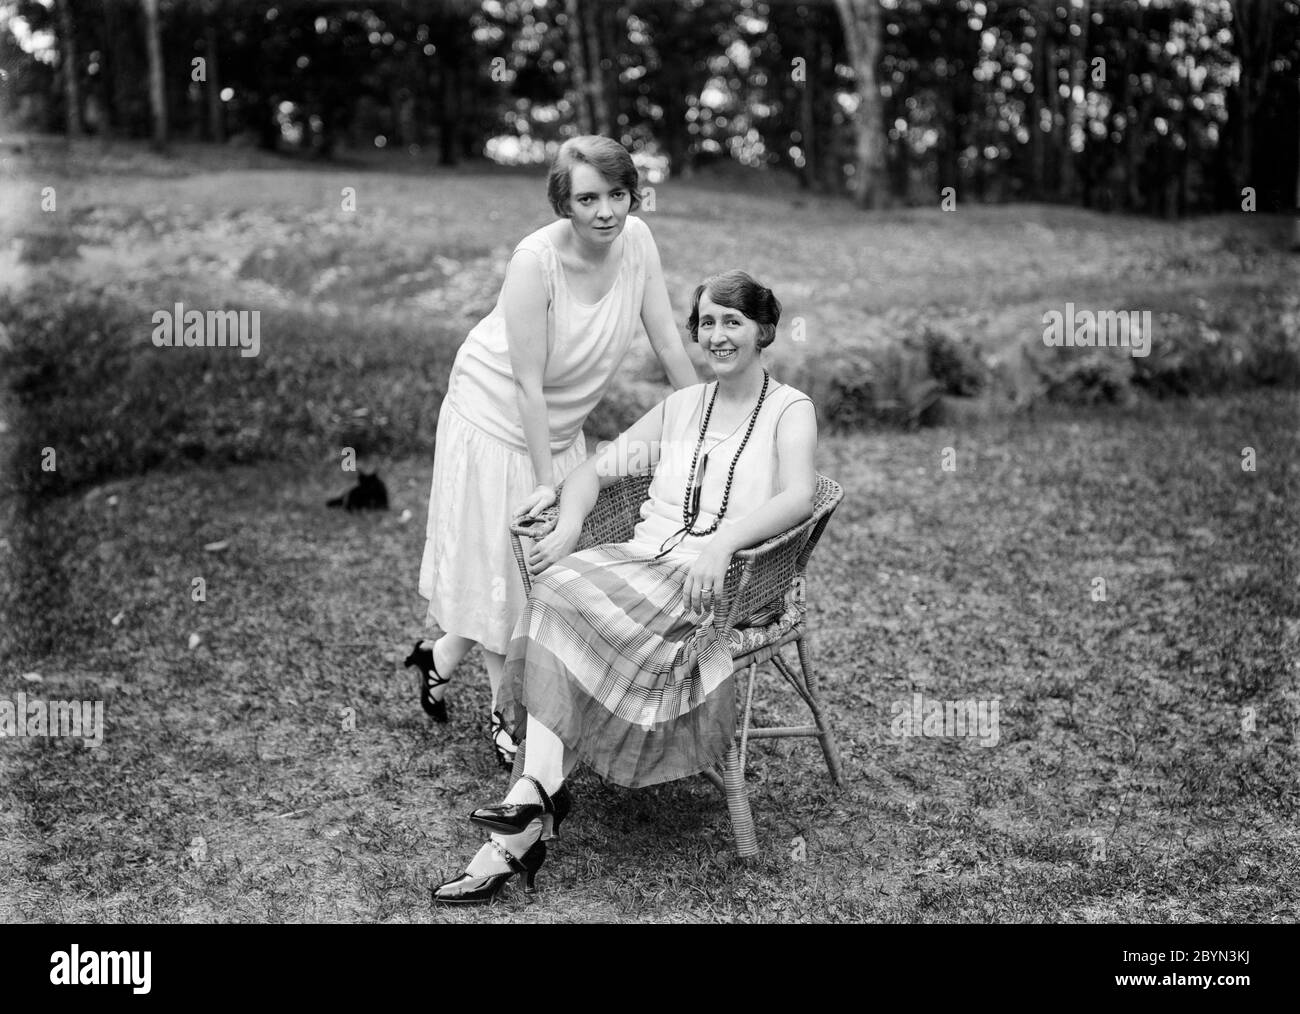 Una fotografia in bianco e nero degli anni '20 in stile inglese che mostra una donna matura, seduta in una sedia in vimini in un giardino, con la figlia, una giovane donna, in piedi accanto a lei, appoggiata sulla sedia. Entrambi sono sorridenti e mostra abito e moda del periodo. Foto Stock